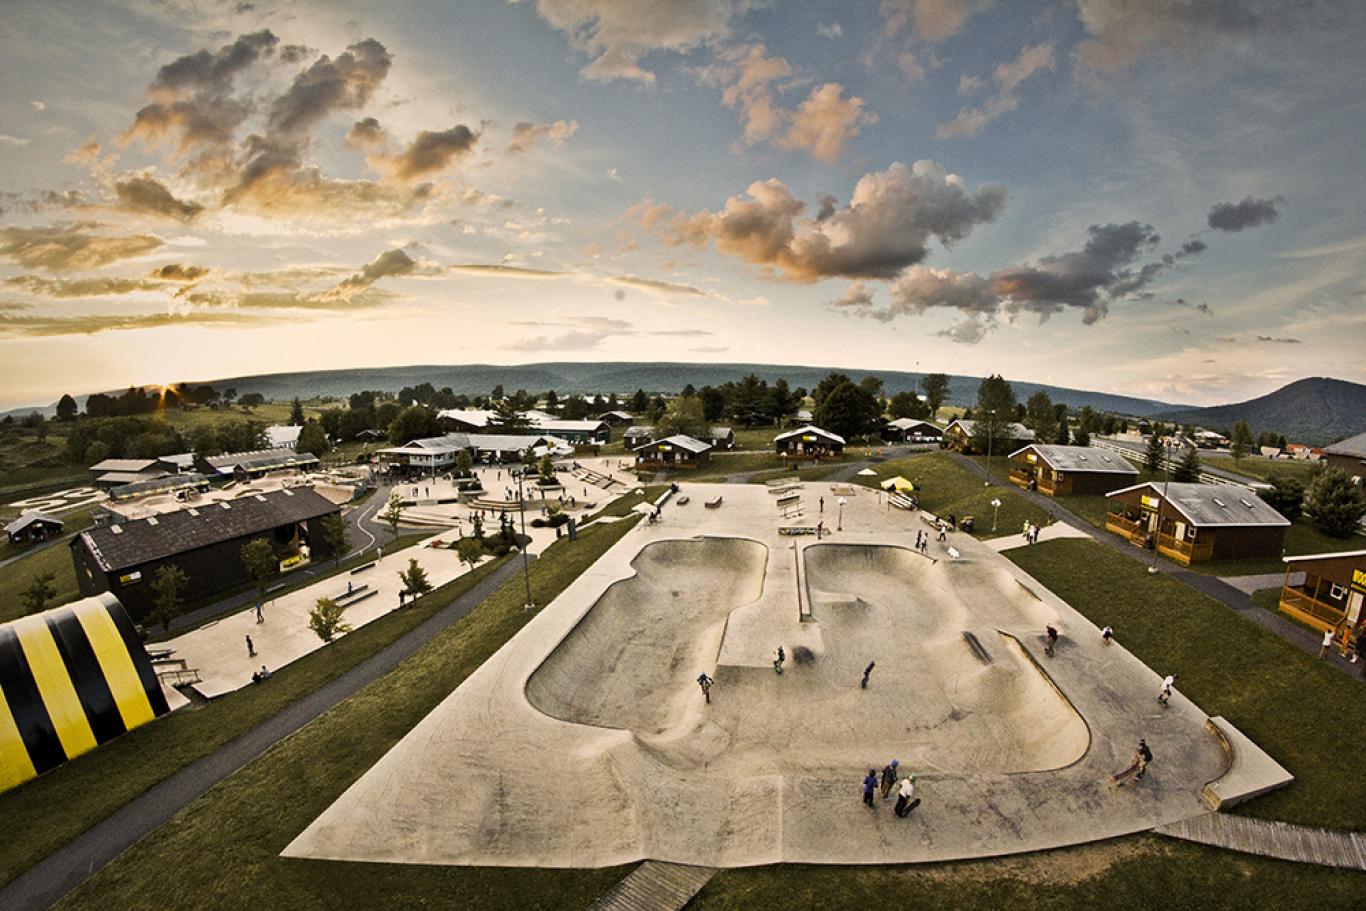 Woodward Skate Park